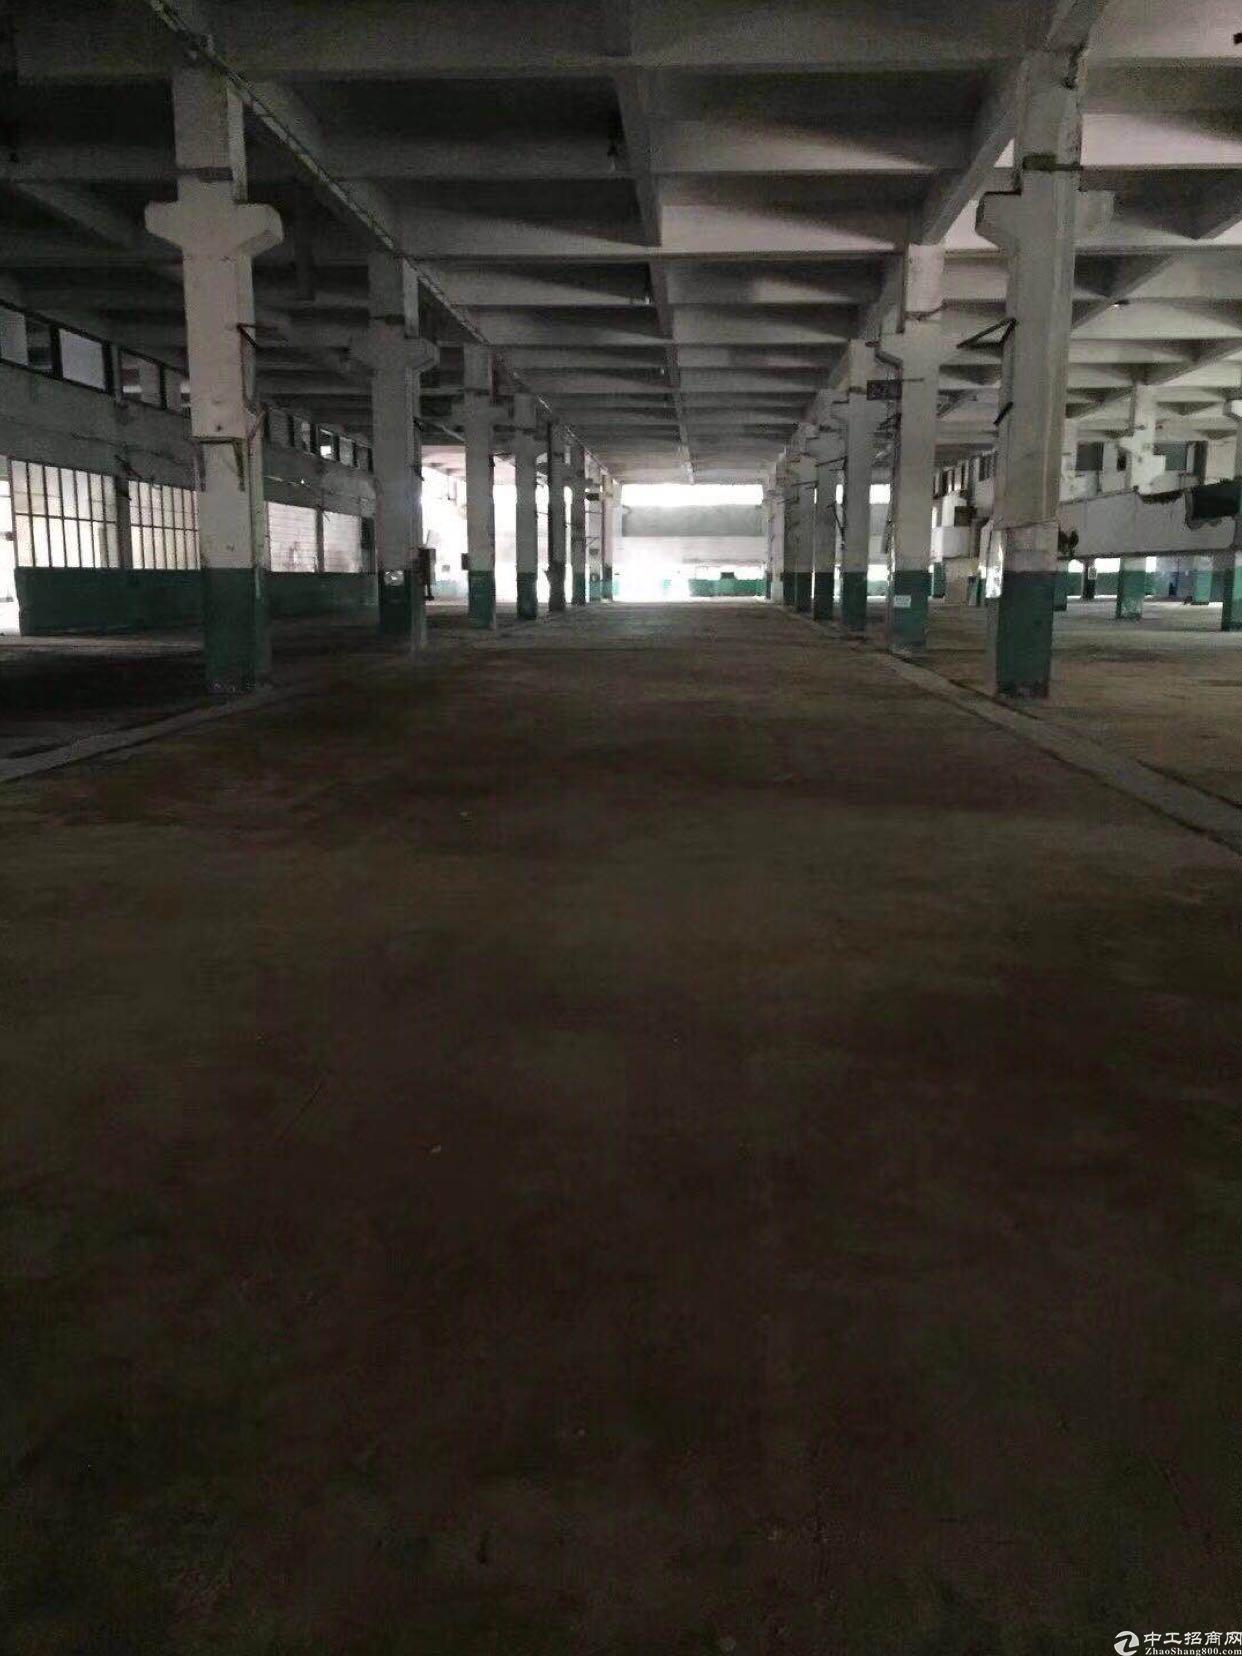 深圳龙华新出两万平一楼厂房物流企业仓库管理停车管理理想场所